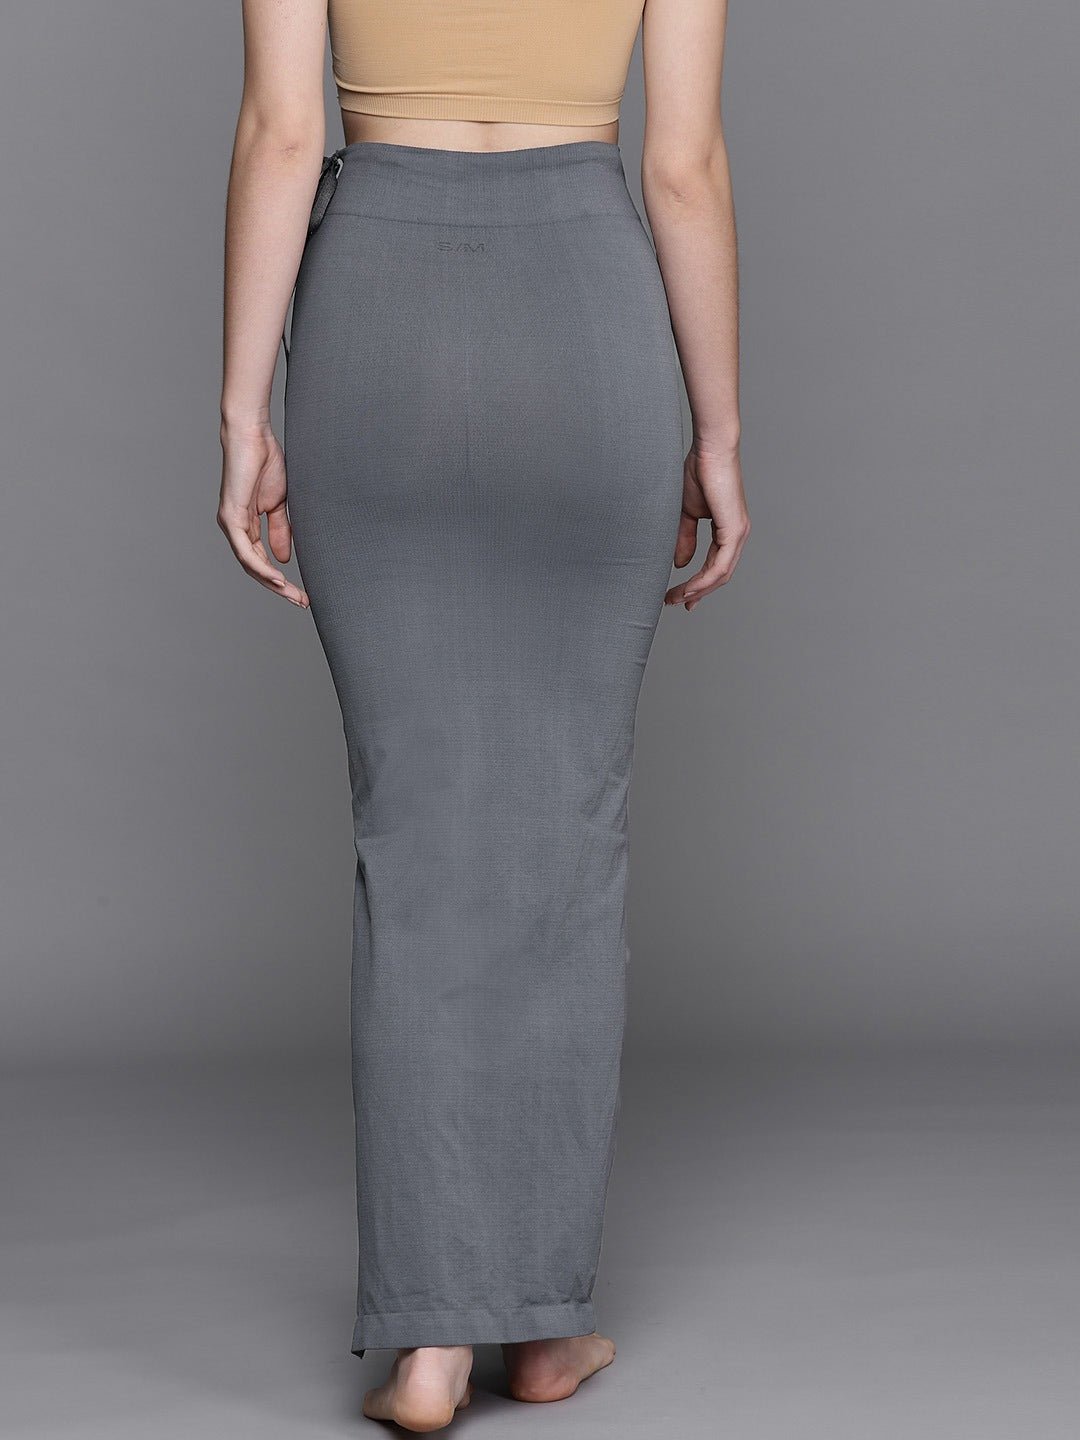 Grey plain saree shapewear - G3-WSP00025 